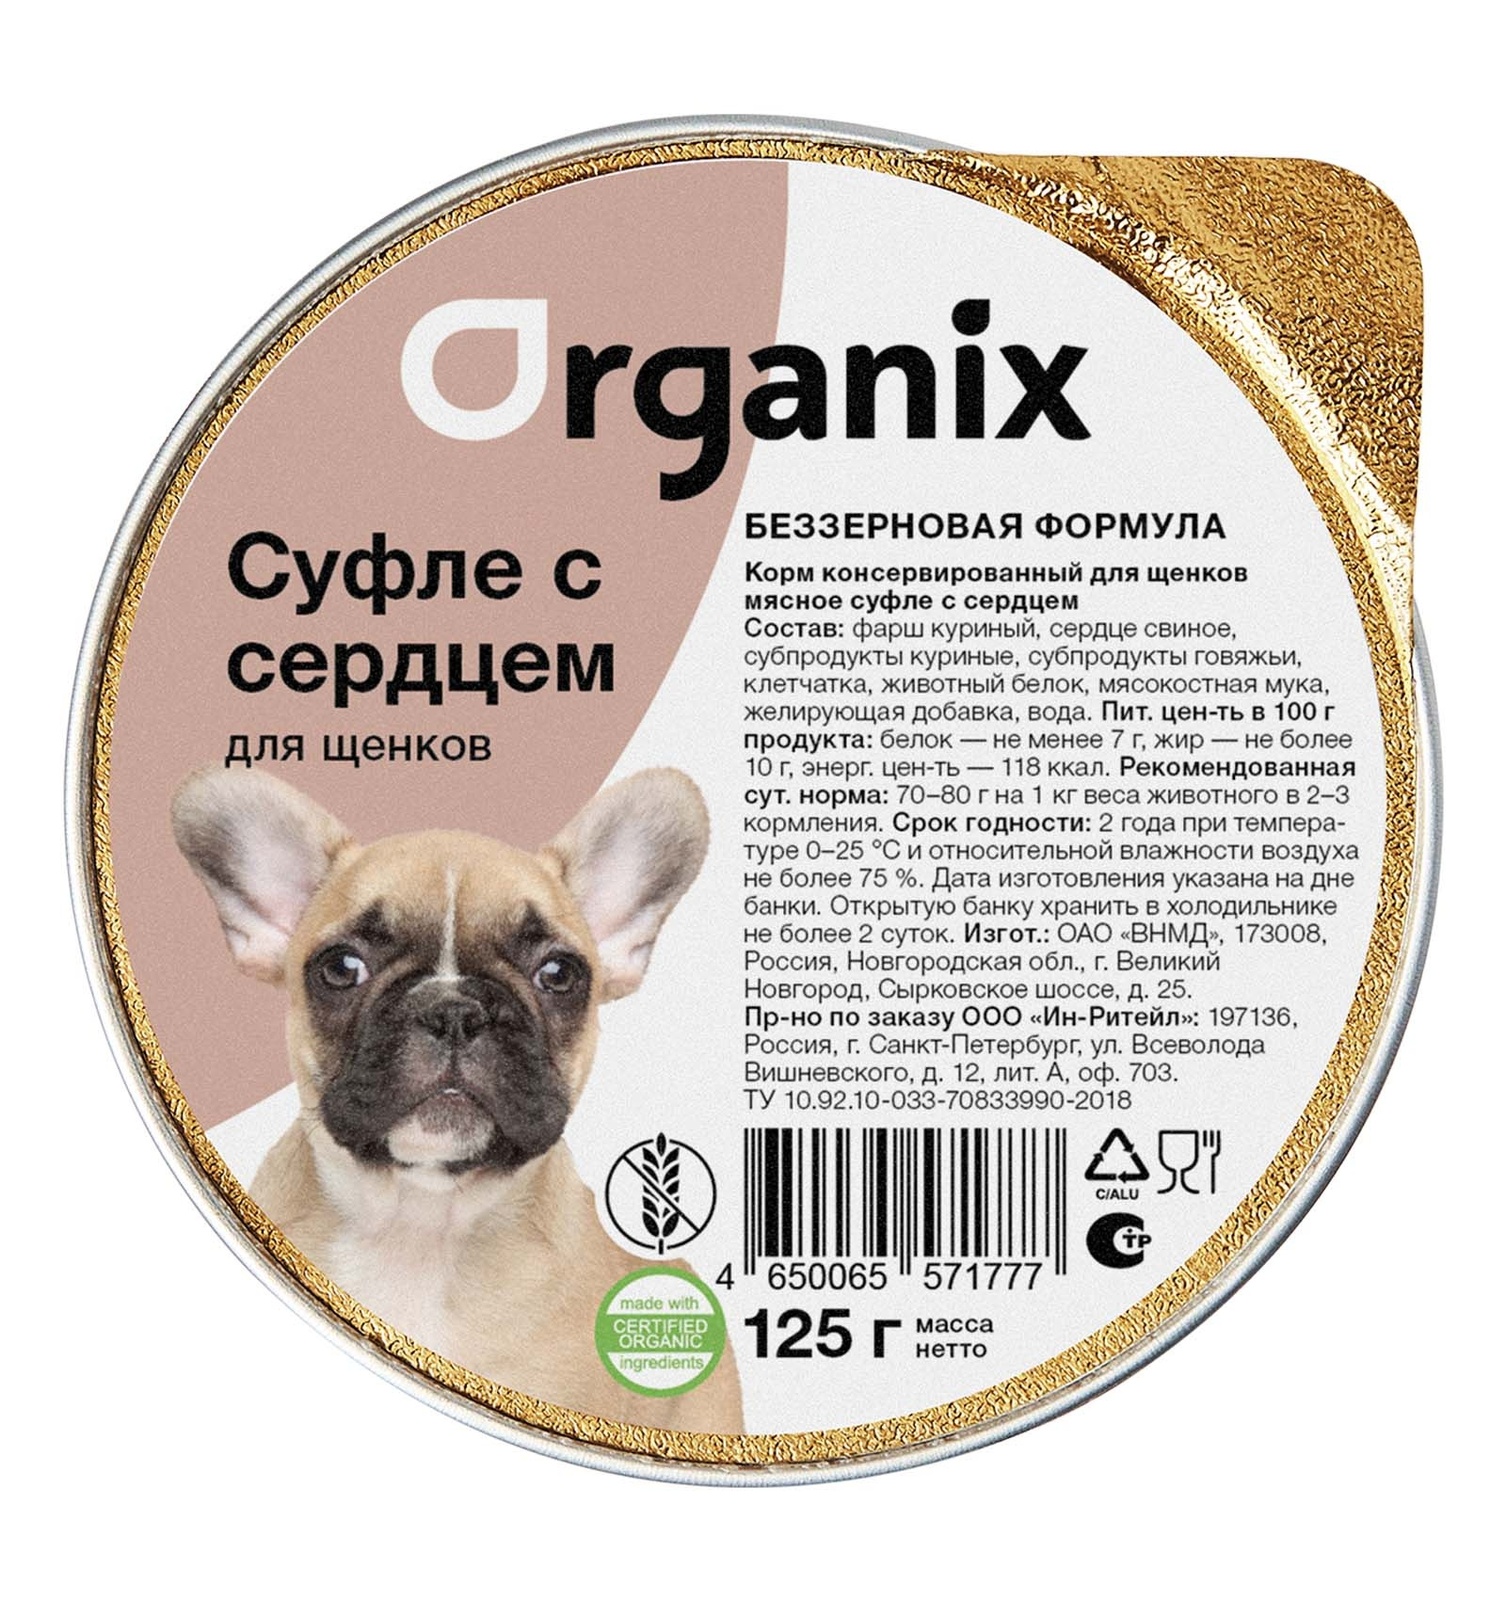 цена Organix консервы Organix мясное суфле с сердцем для щенков (125 г)